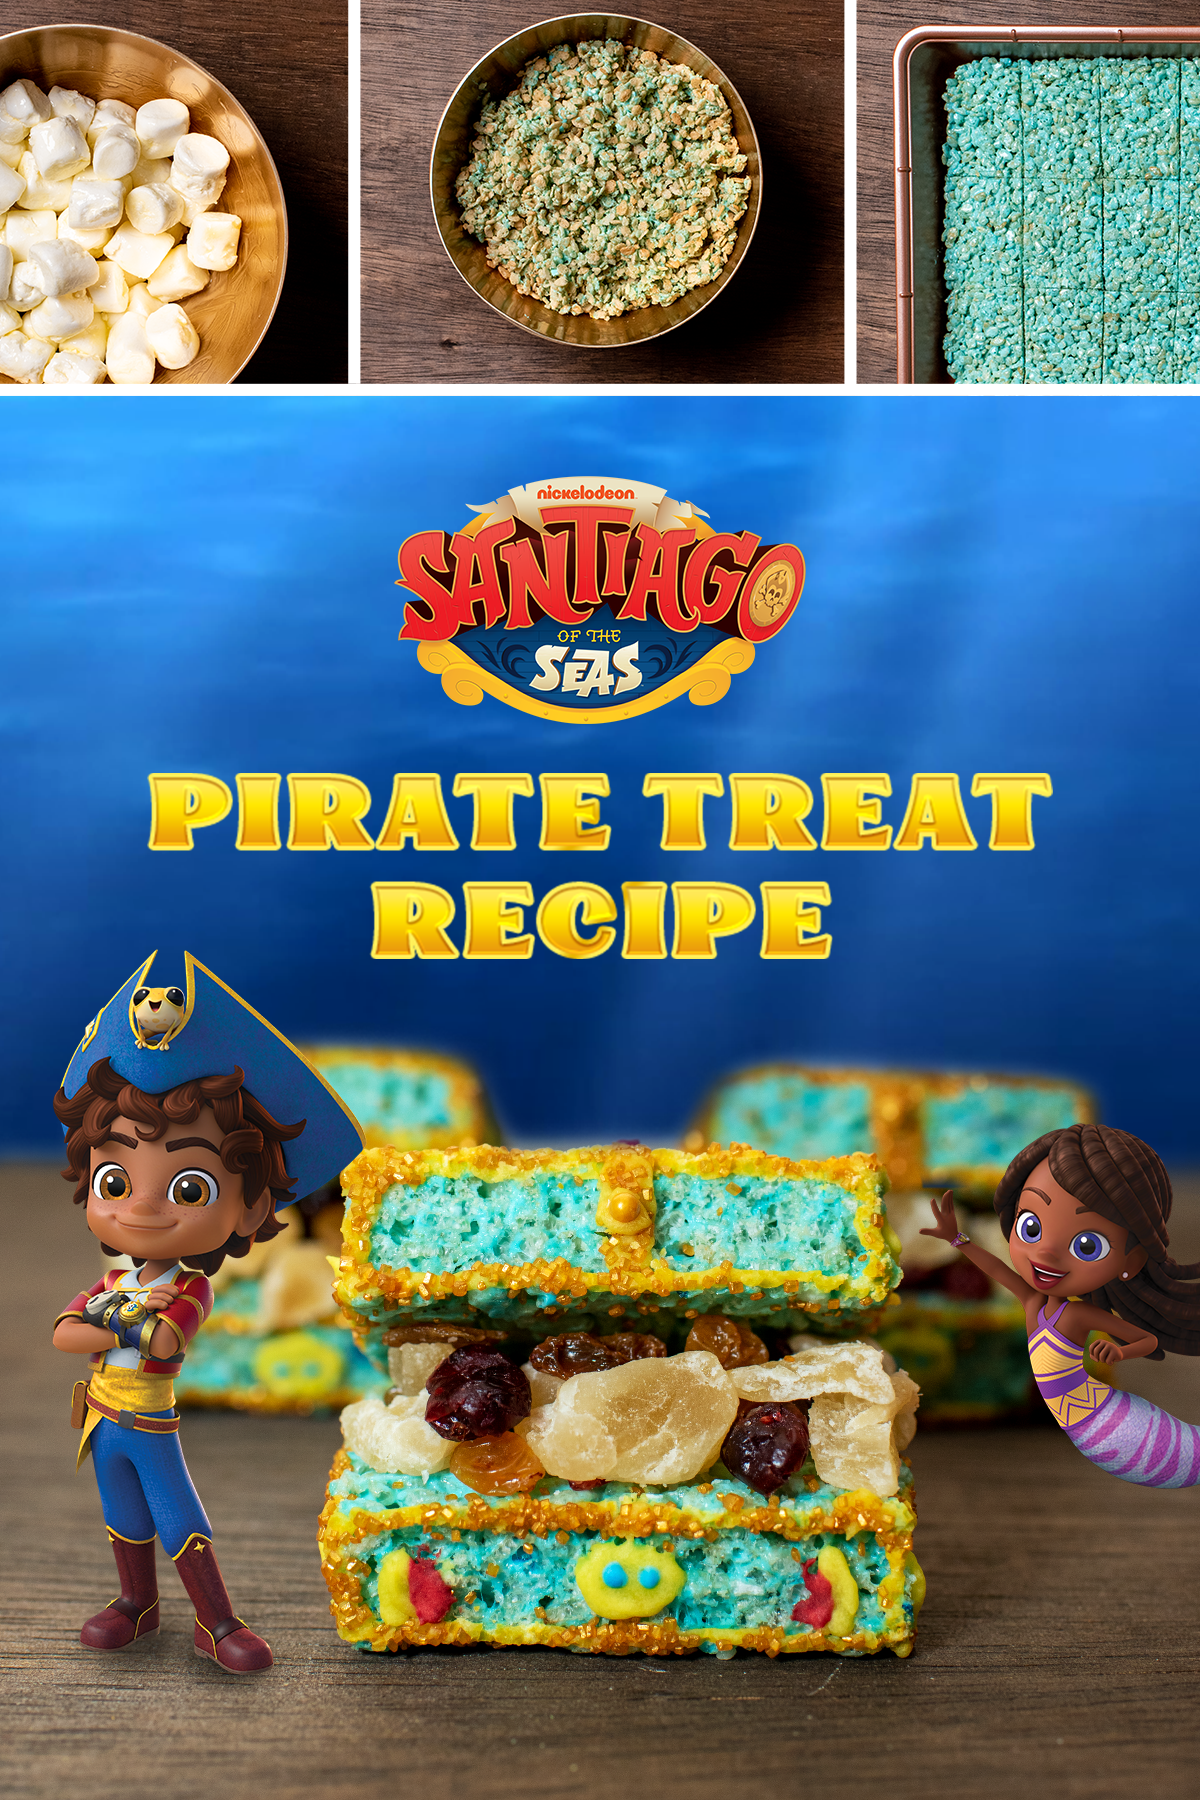 Santiago of the Seas Pirate Treat Recipe